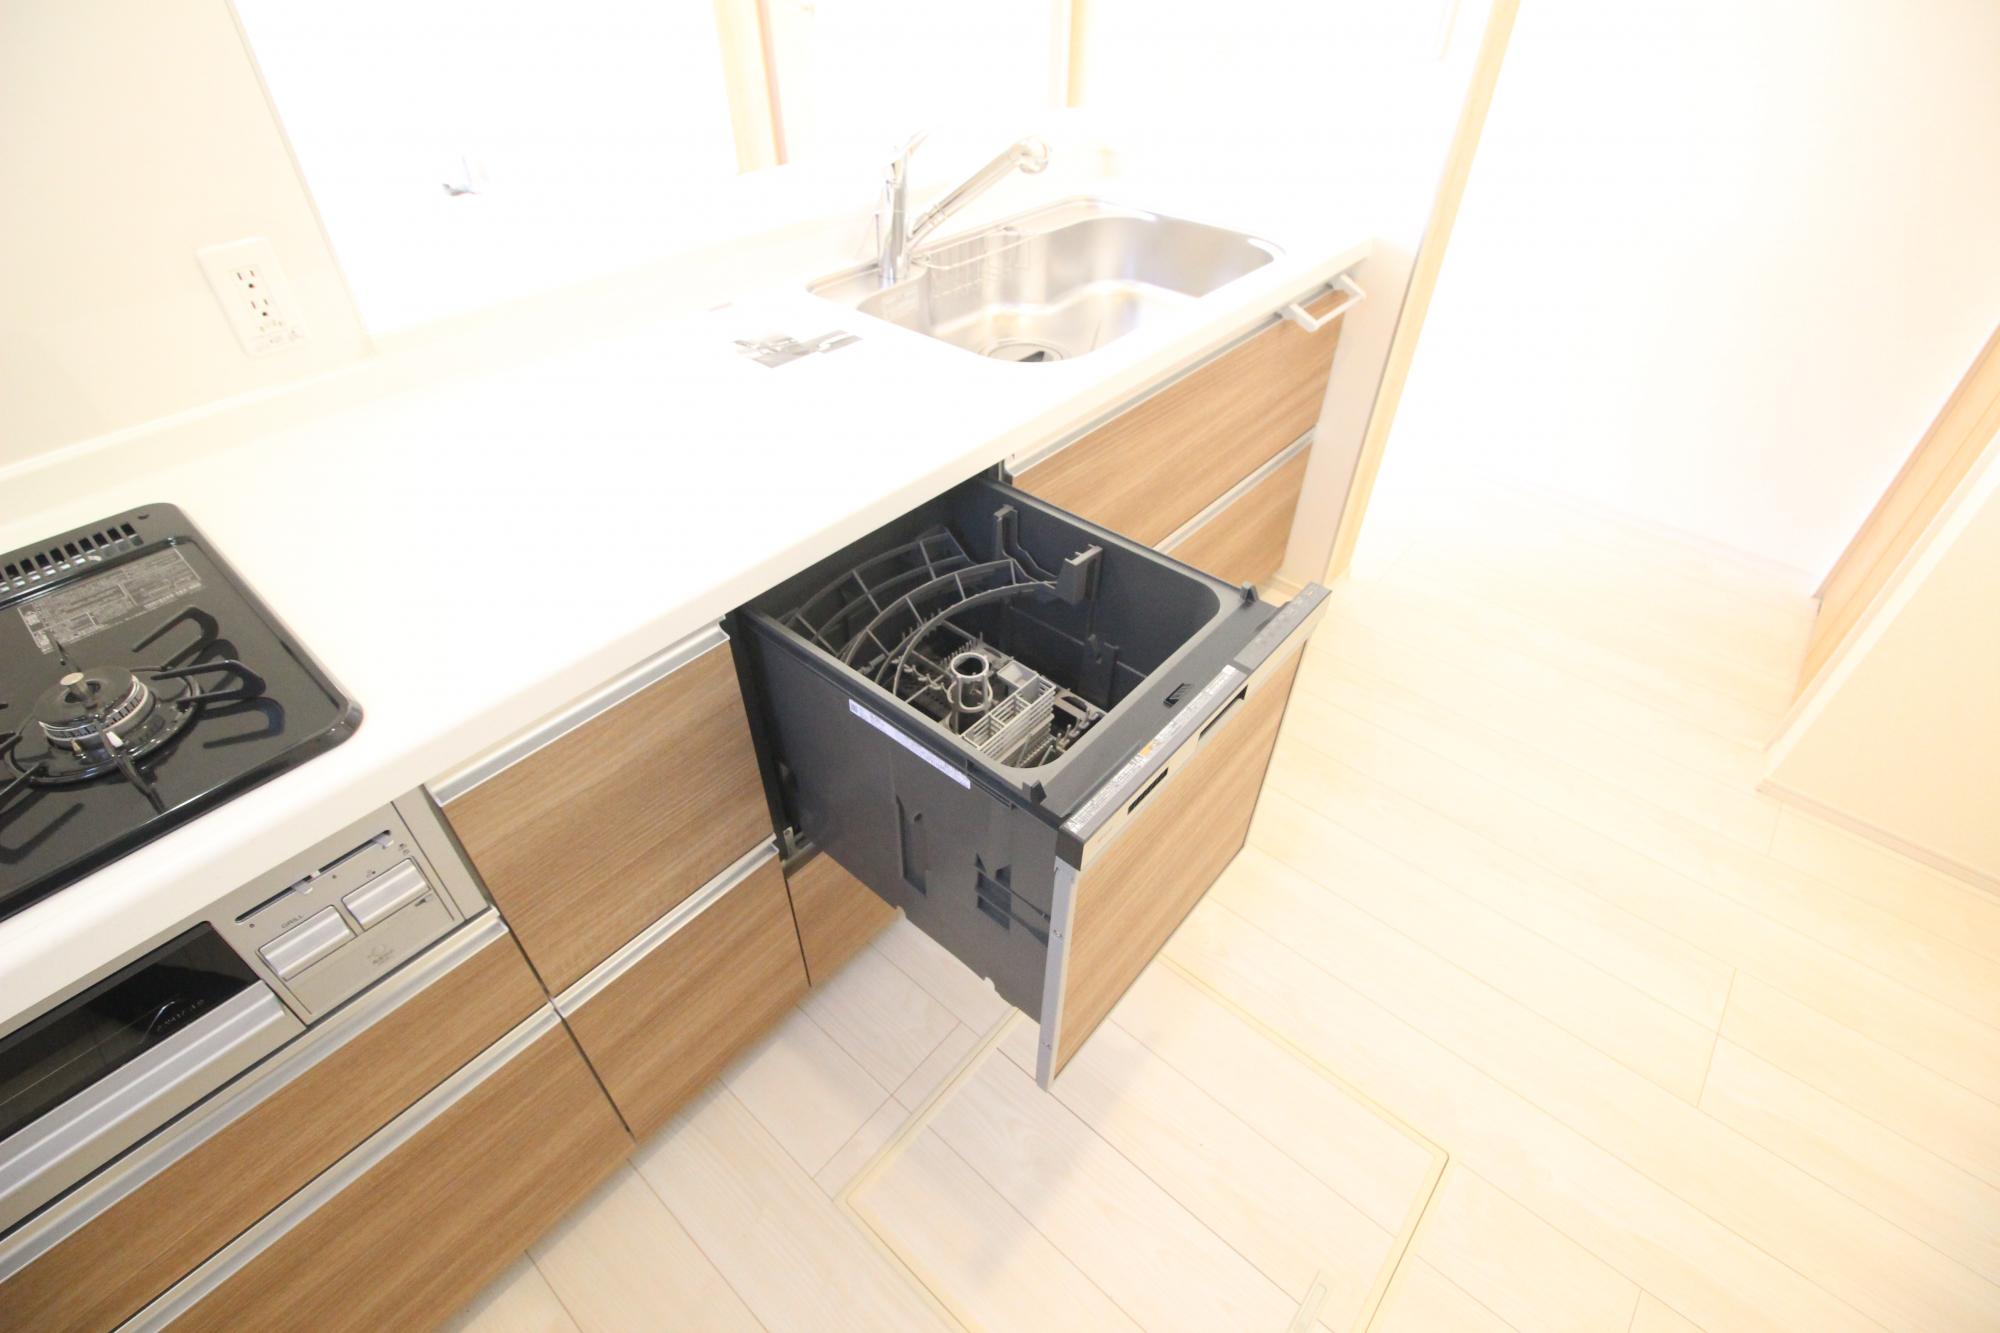 食洗機　毎日の家事に便利な食洗機が備え付け!手荒れの時期にも嬉しいですね!
